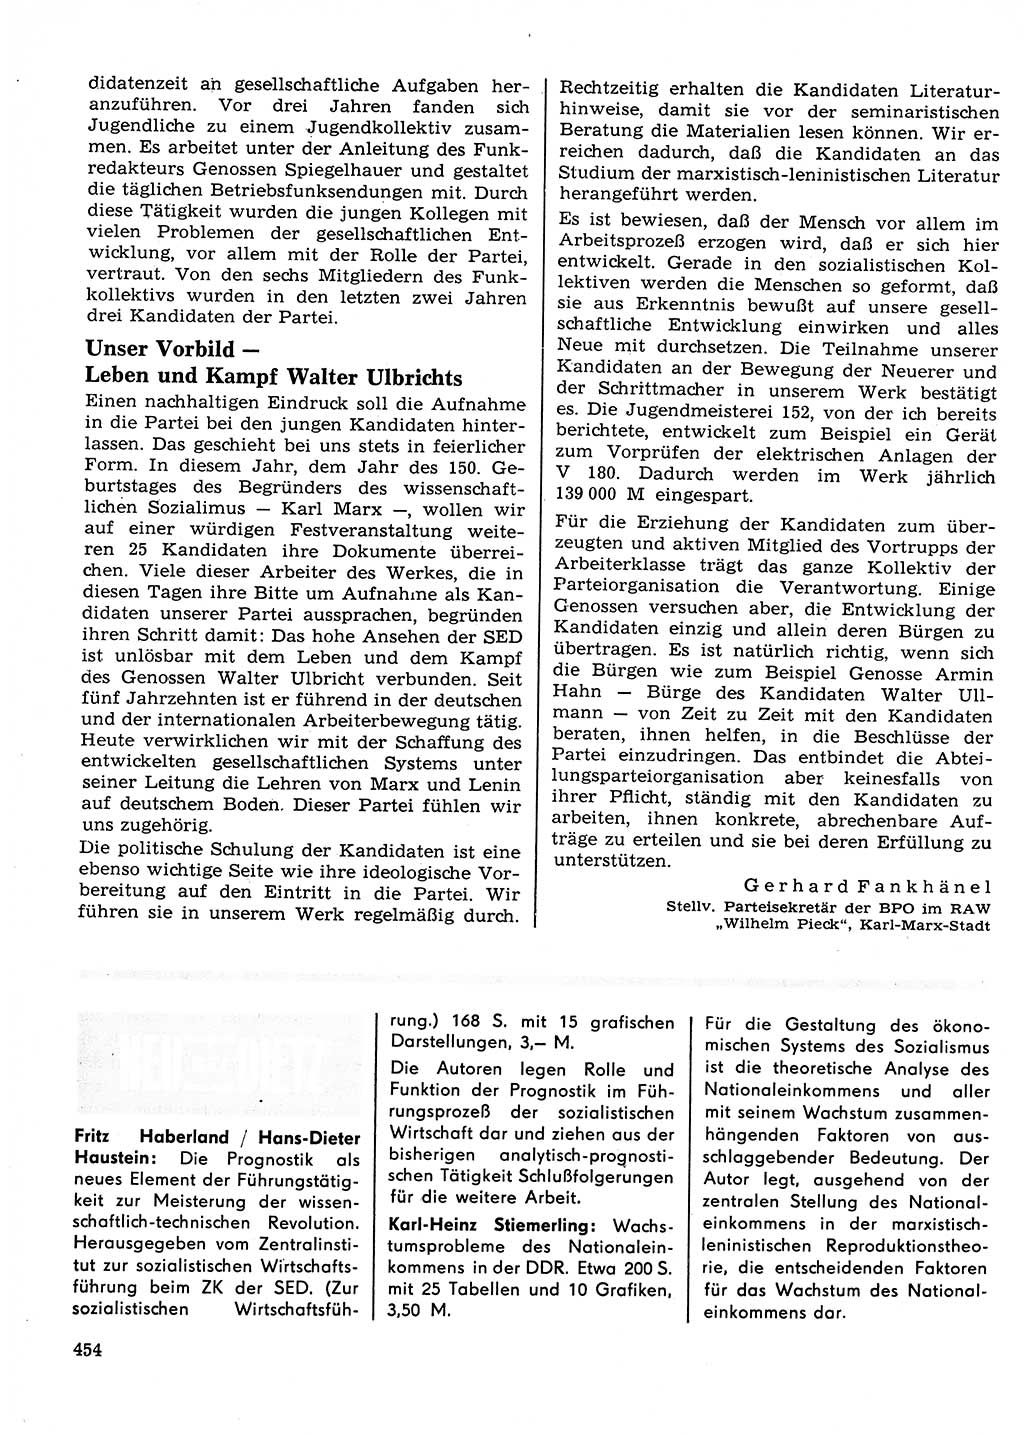 Neuer Weg (NW), Organ des Zentralkomitees (ZK) der SED (Sozialistische Einheitspartei Deutschlands) für Fragen des Parteilebens, 23. Jahrgang [Deutsche Demokratische Republik (DDR)] 1968, Seite 454 (NW ZK SED DDR 1968, S. 454)